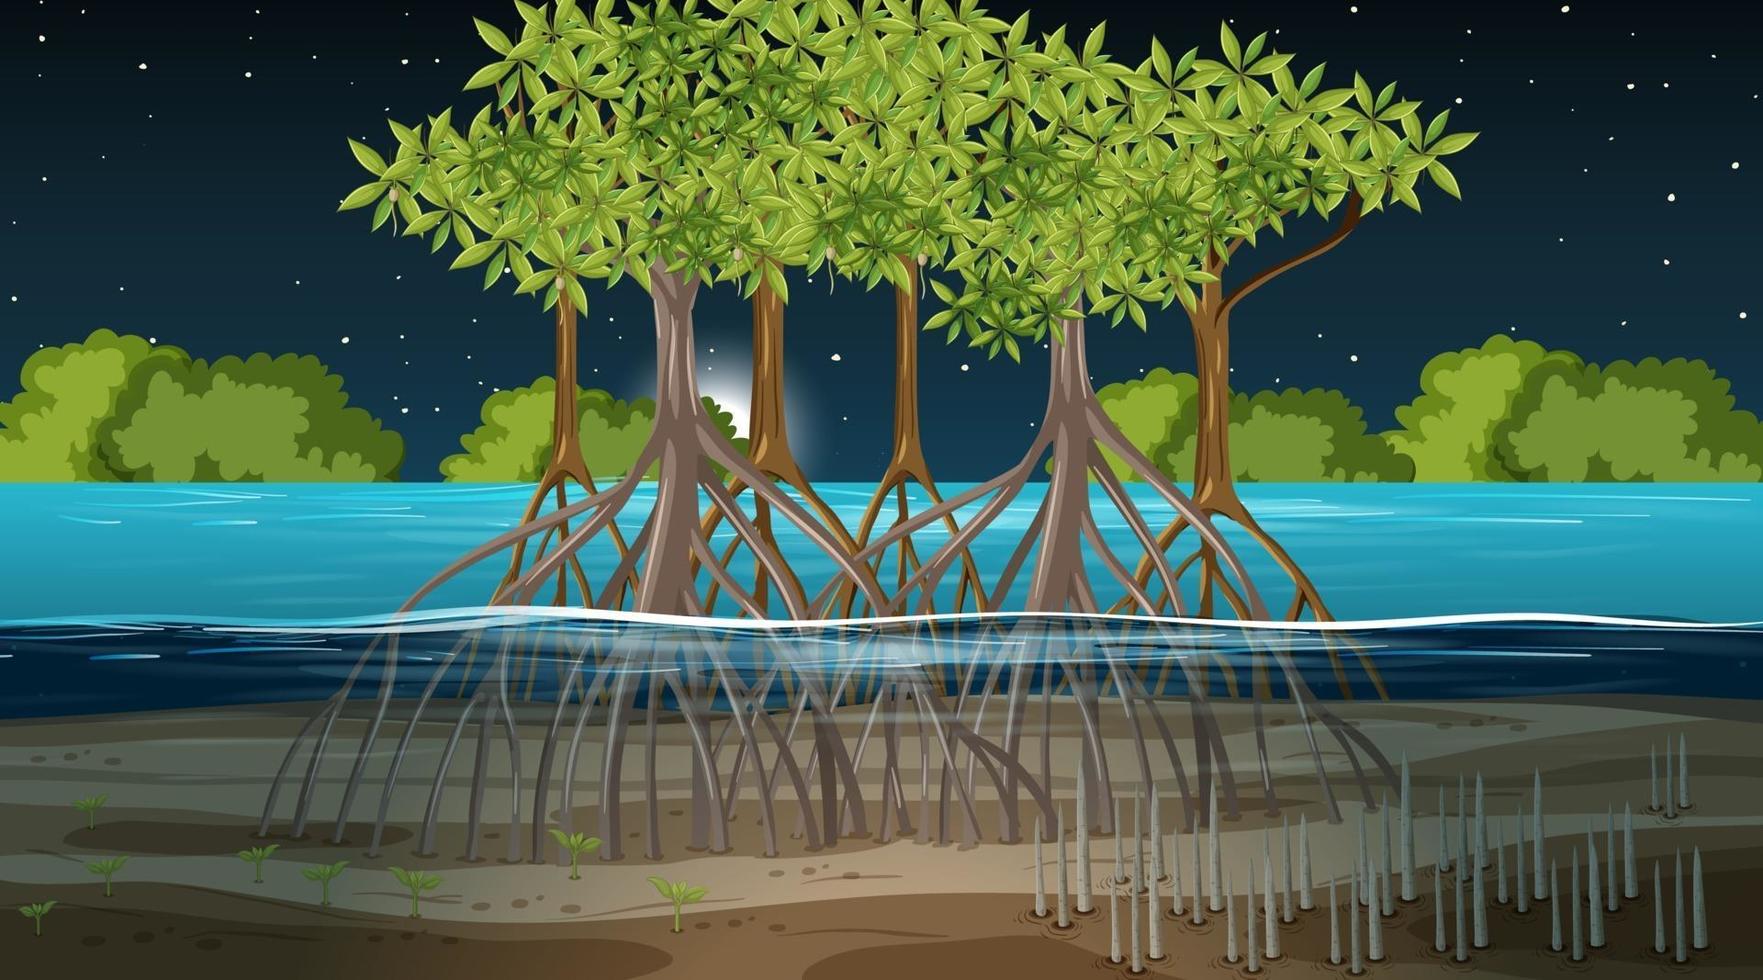 cena de paisagem de floresta de mangue à noite vetor